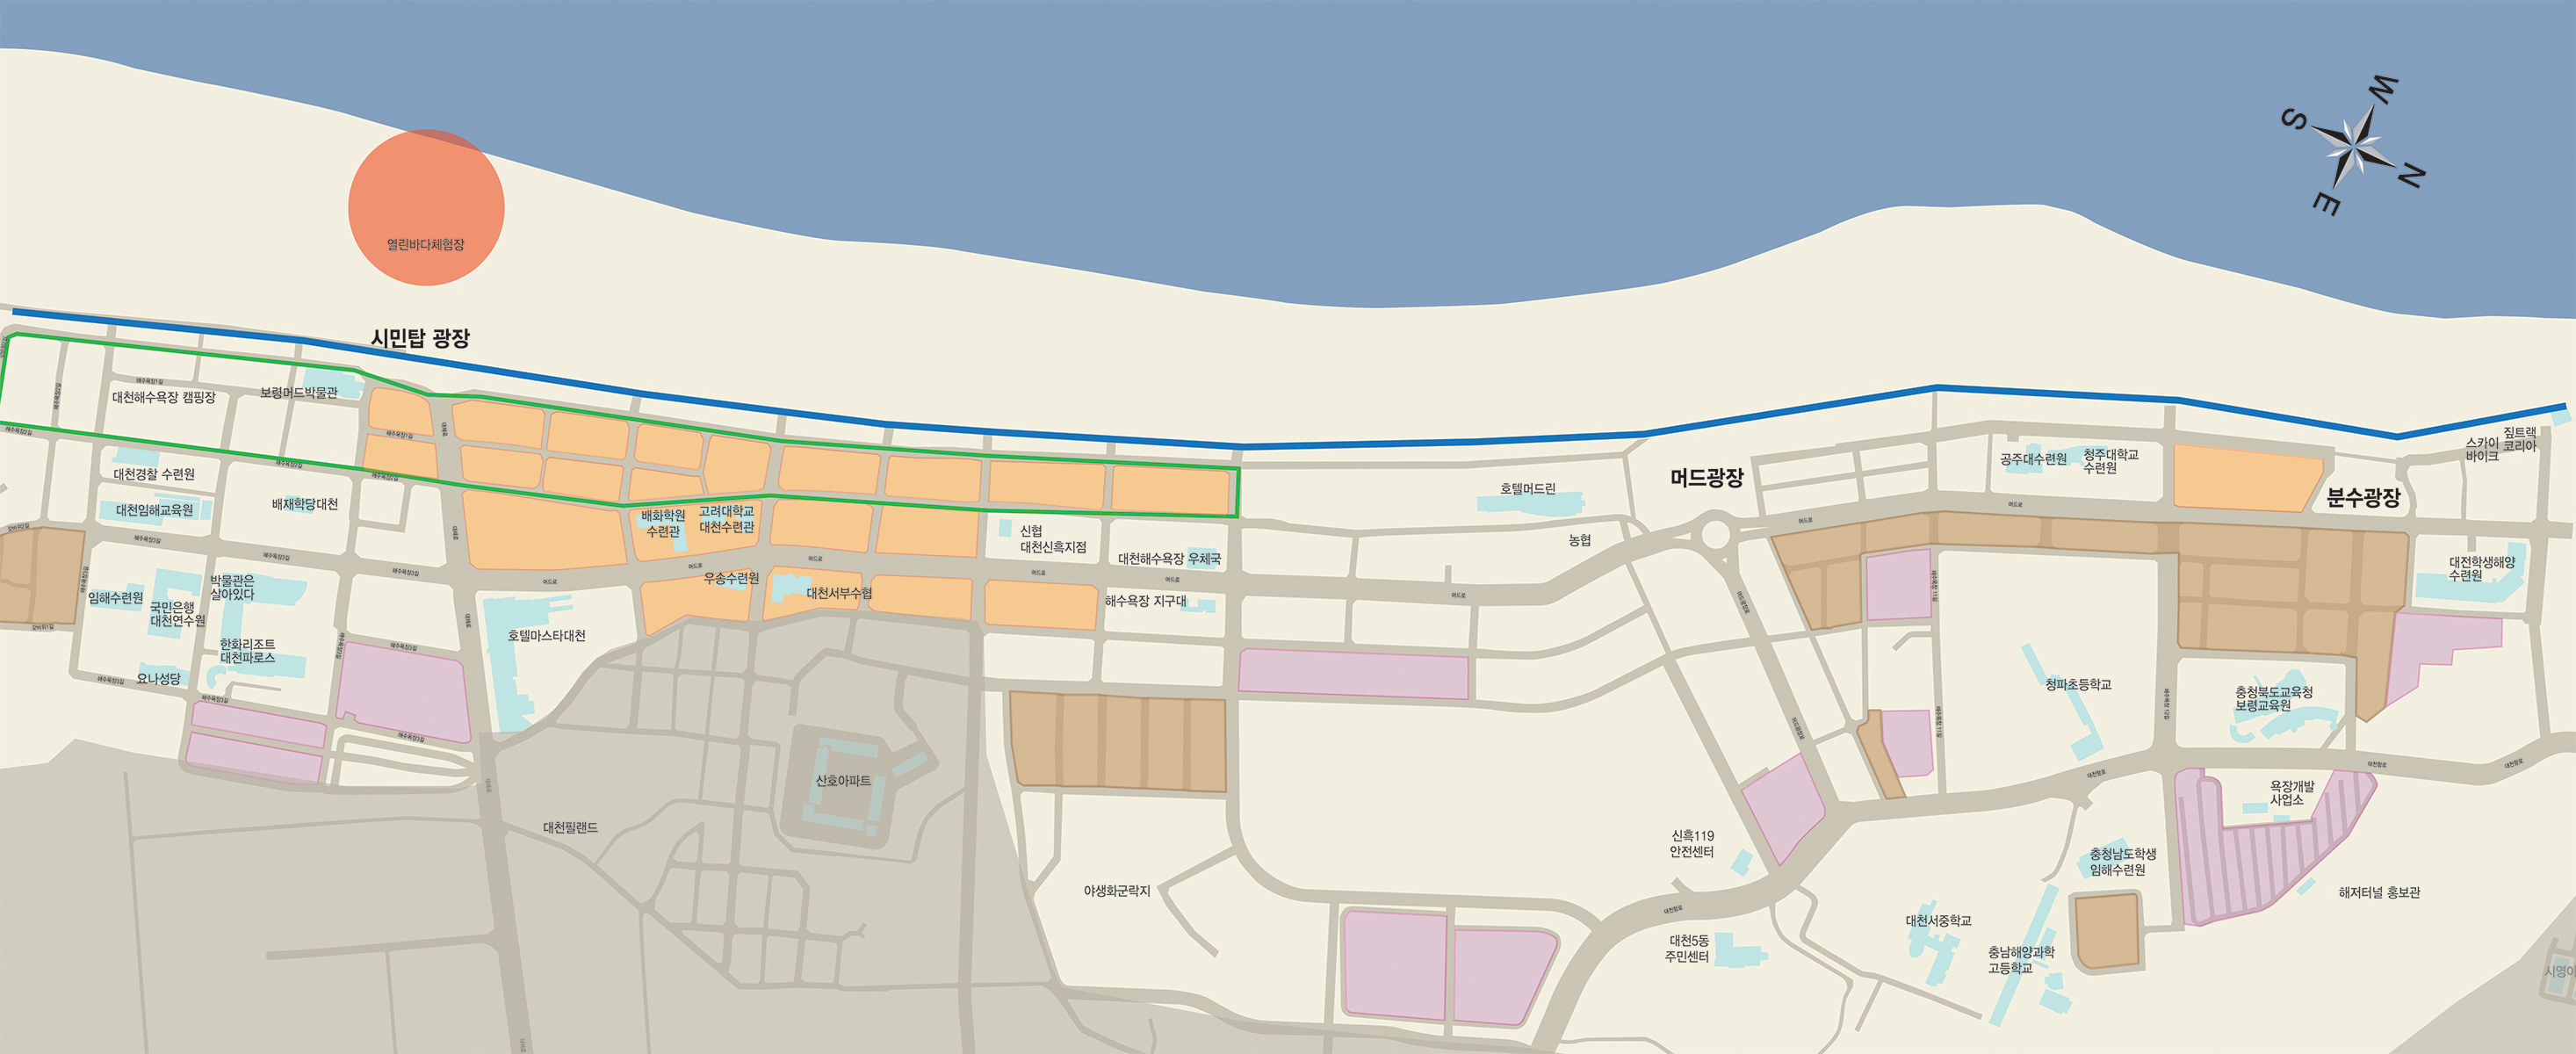 대천해수욕장 시설안내도(지도) : 이용시설 및 안내, 차없는거리(7~8월), 공영주차장, 민박,펜션 지역, 무장애 해변보행로, 열린바다체험장의 위치를 확인하실 수 있습니다.